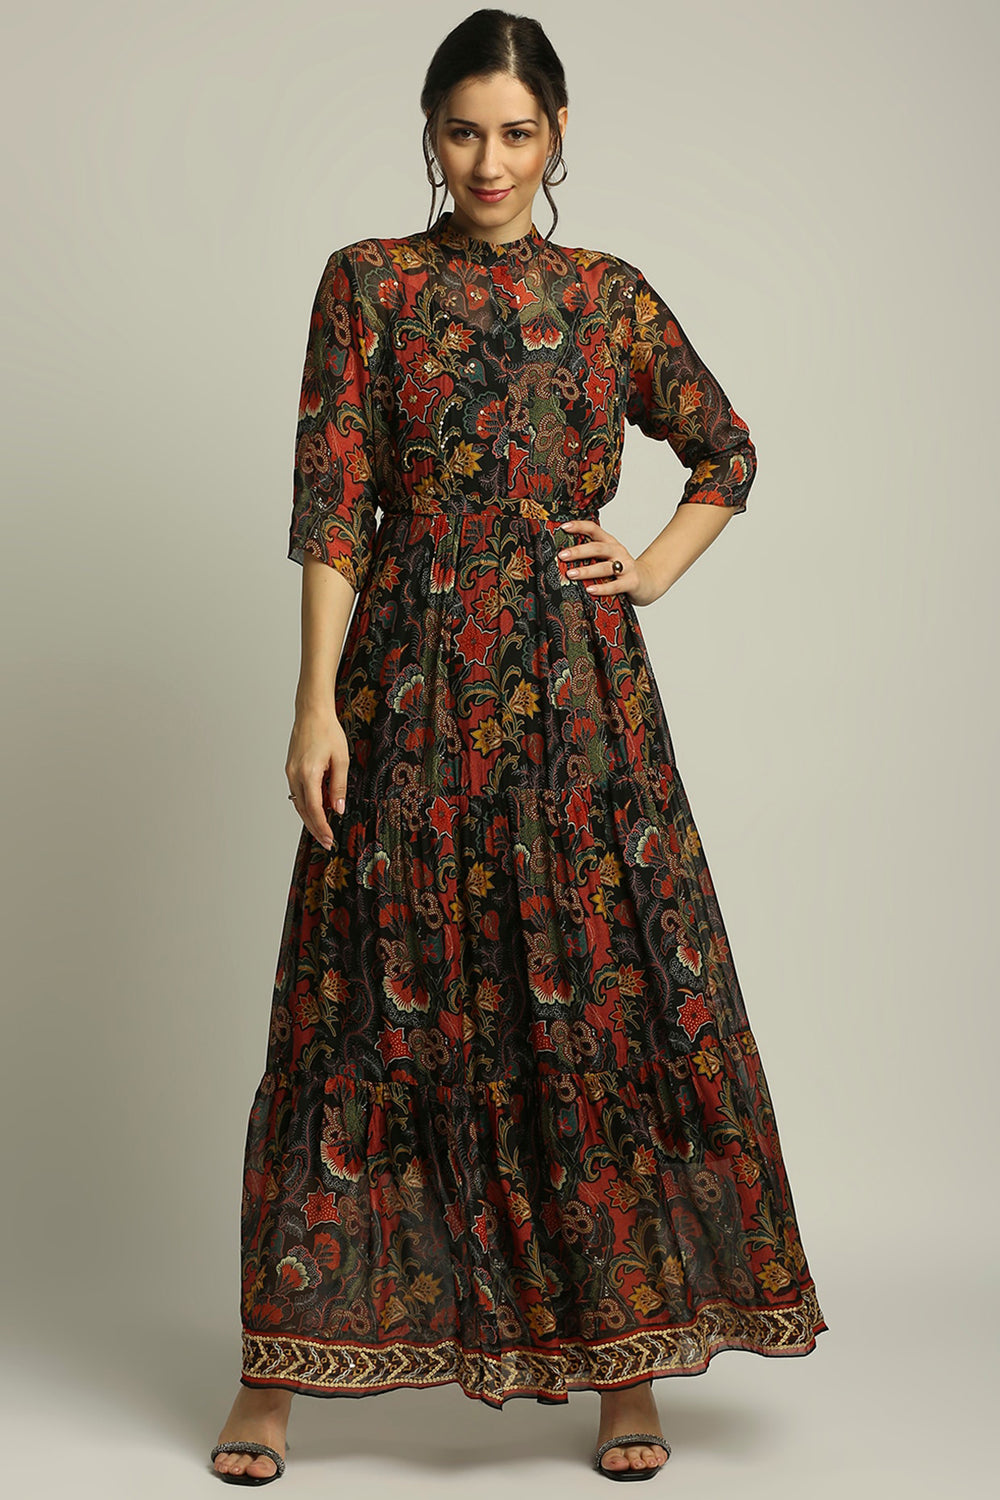 Batik Printed Long Tiered Dress